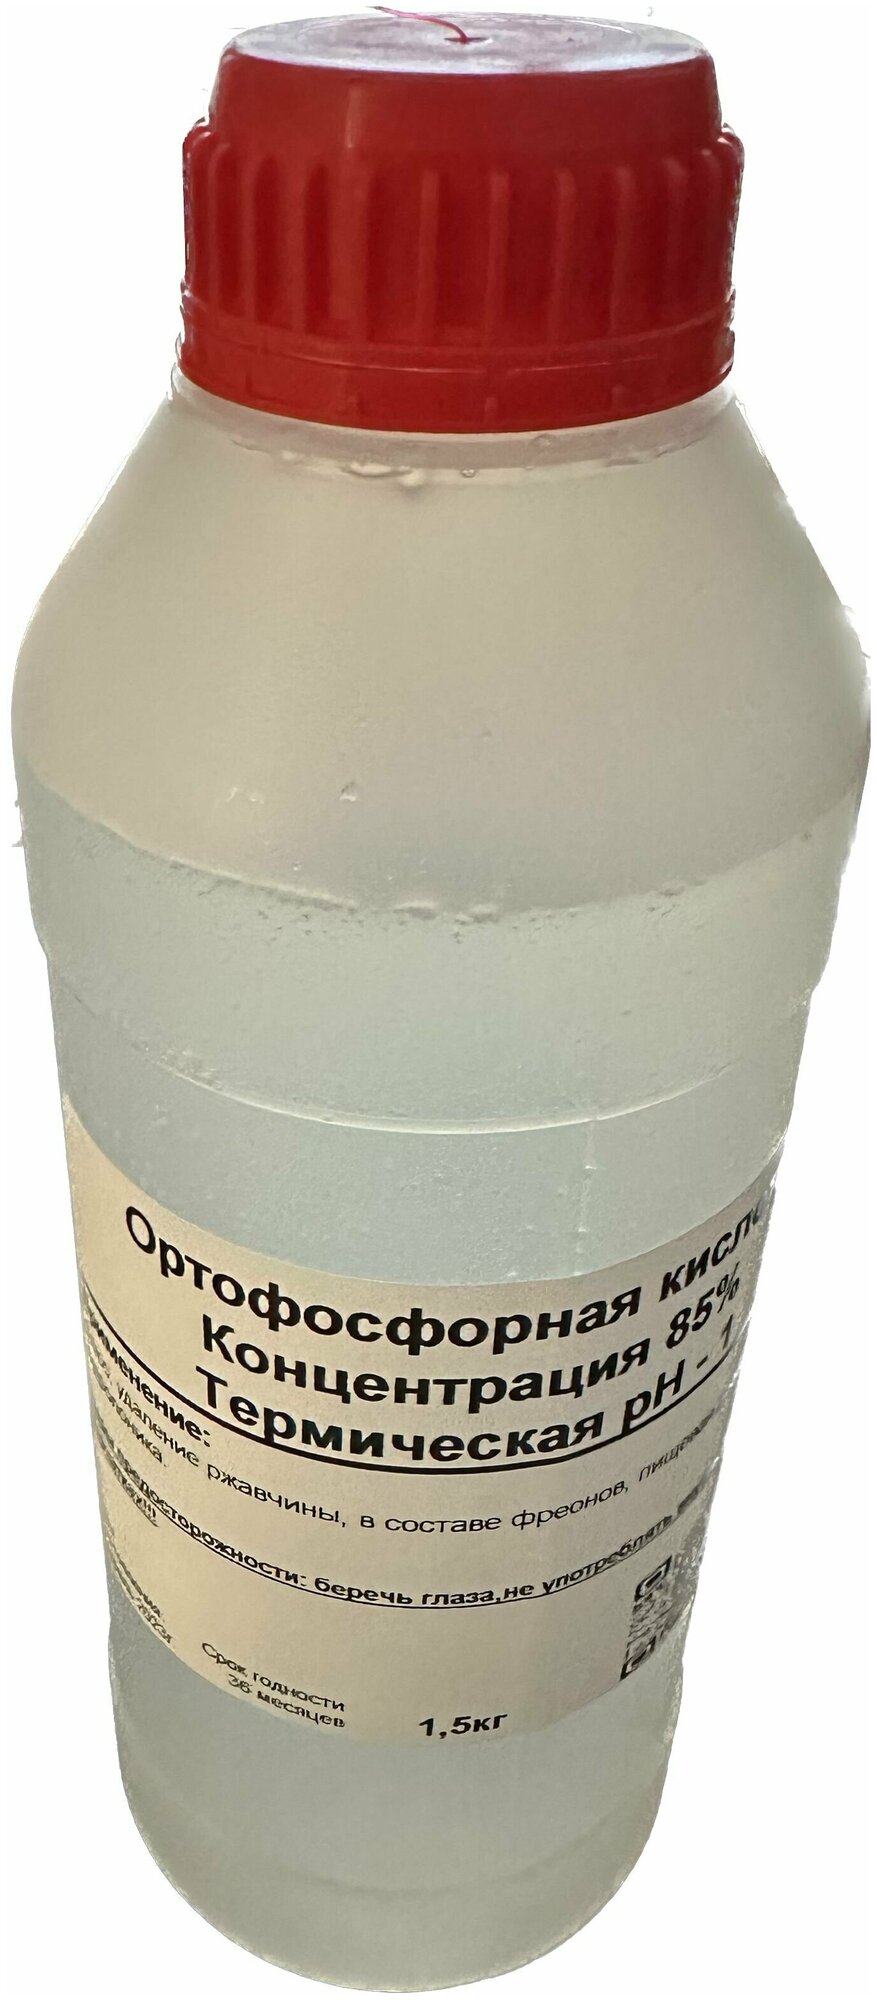 Ортофосфорная кислота 85% марка А 15килограмма